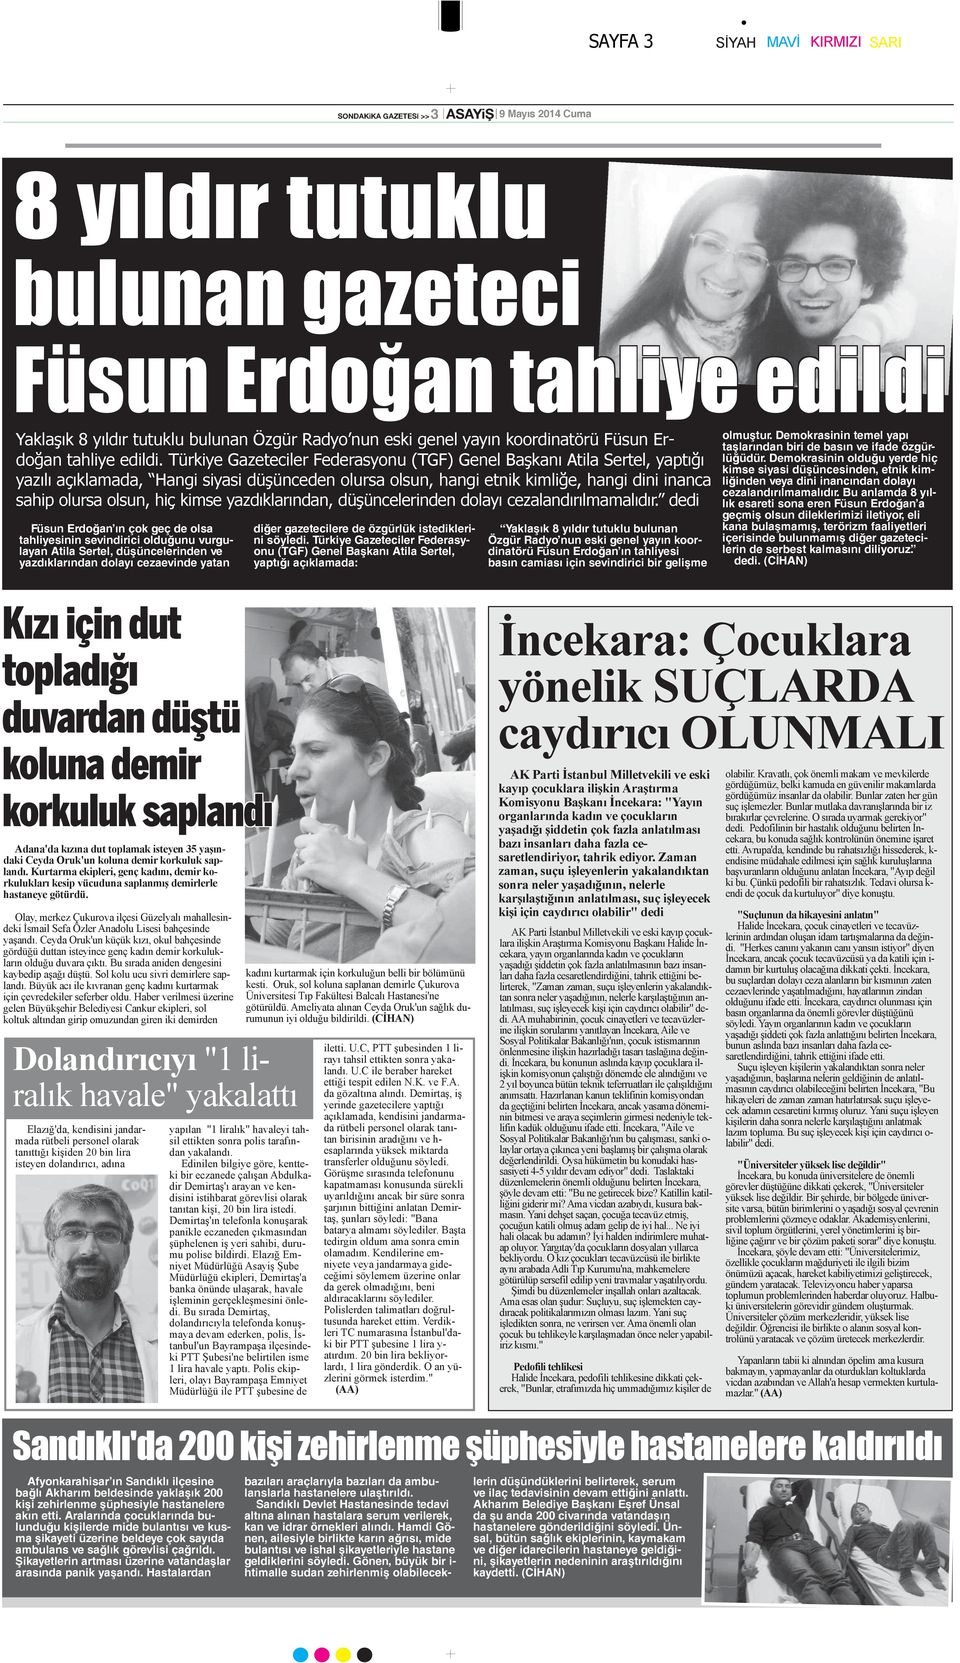 Türkiye Gazeteciler Federasyonu (TGF) Genel Başkanı Atila Sertel, yaptığı yazılı açıklamada, Hangi siyasi düşünceden olursa olsun, hangi etnik kimliğe, hangi dini inanca sahip olursa olsun, hiç kimse